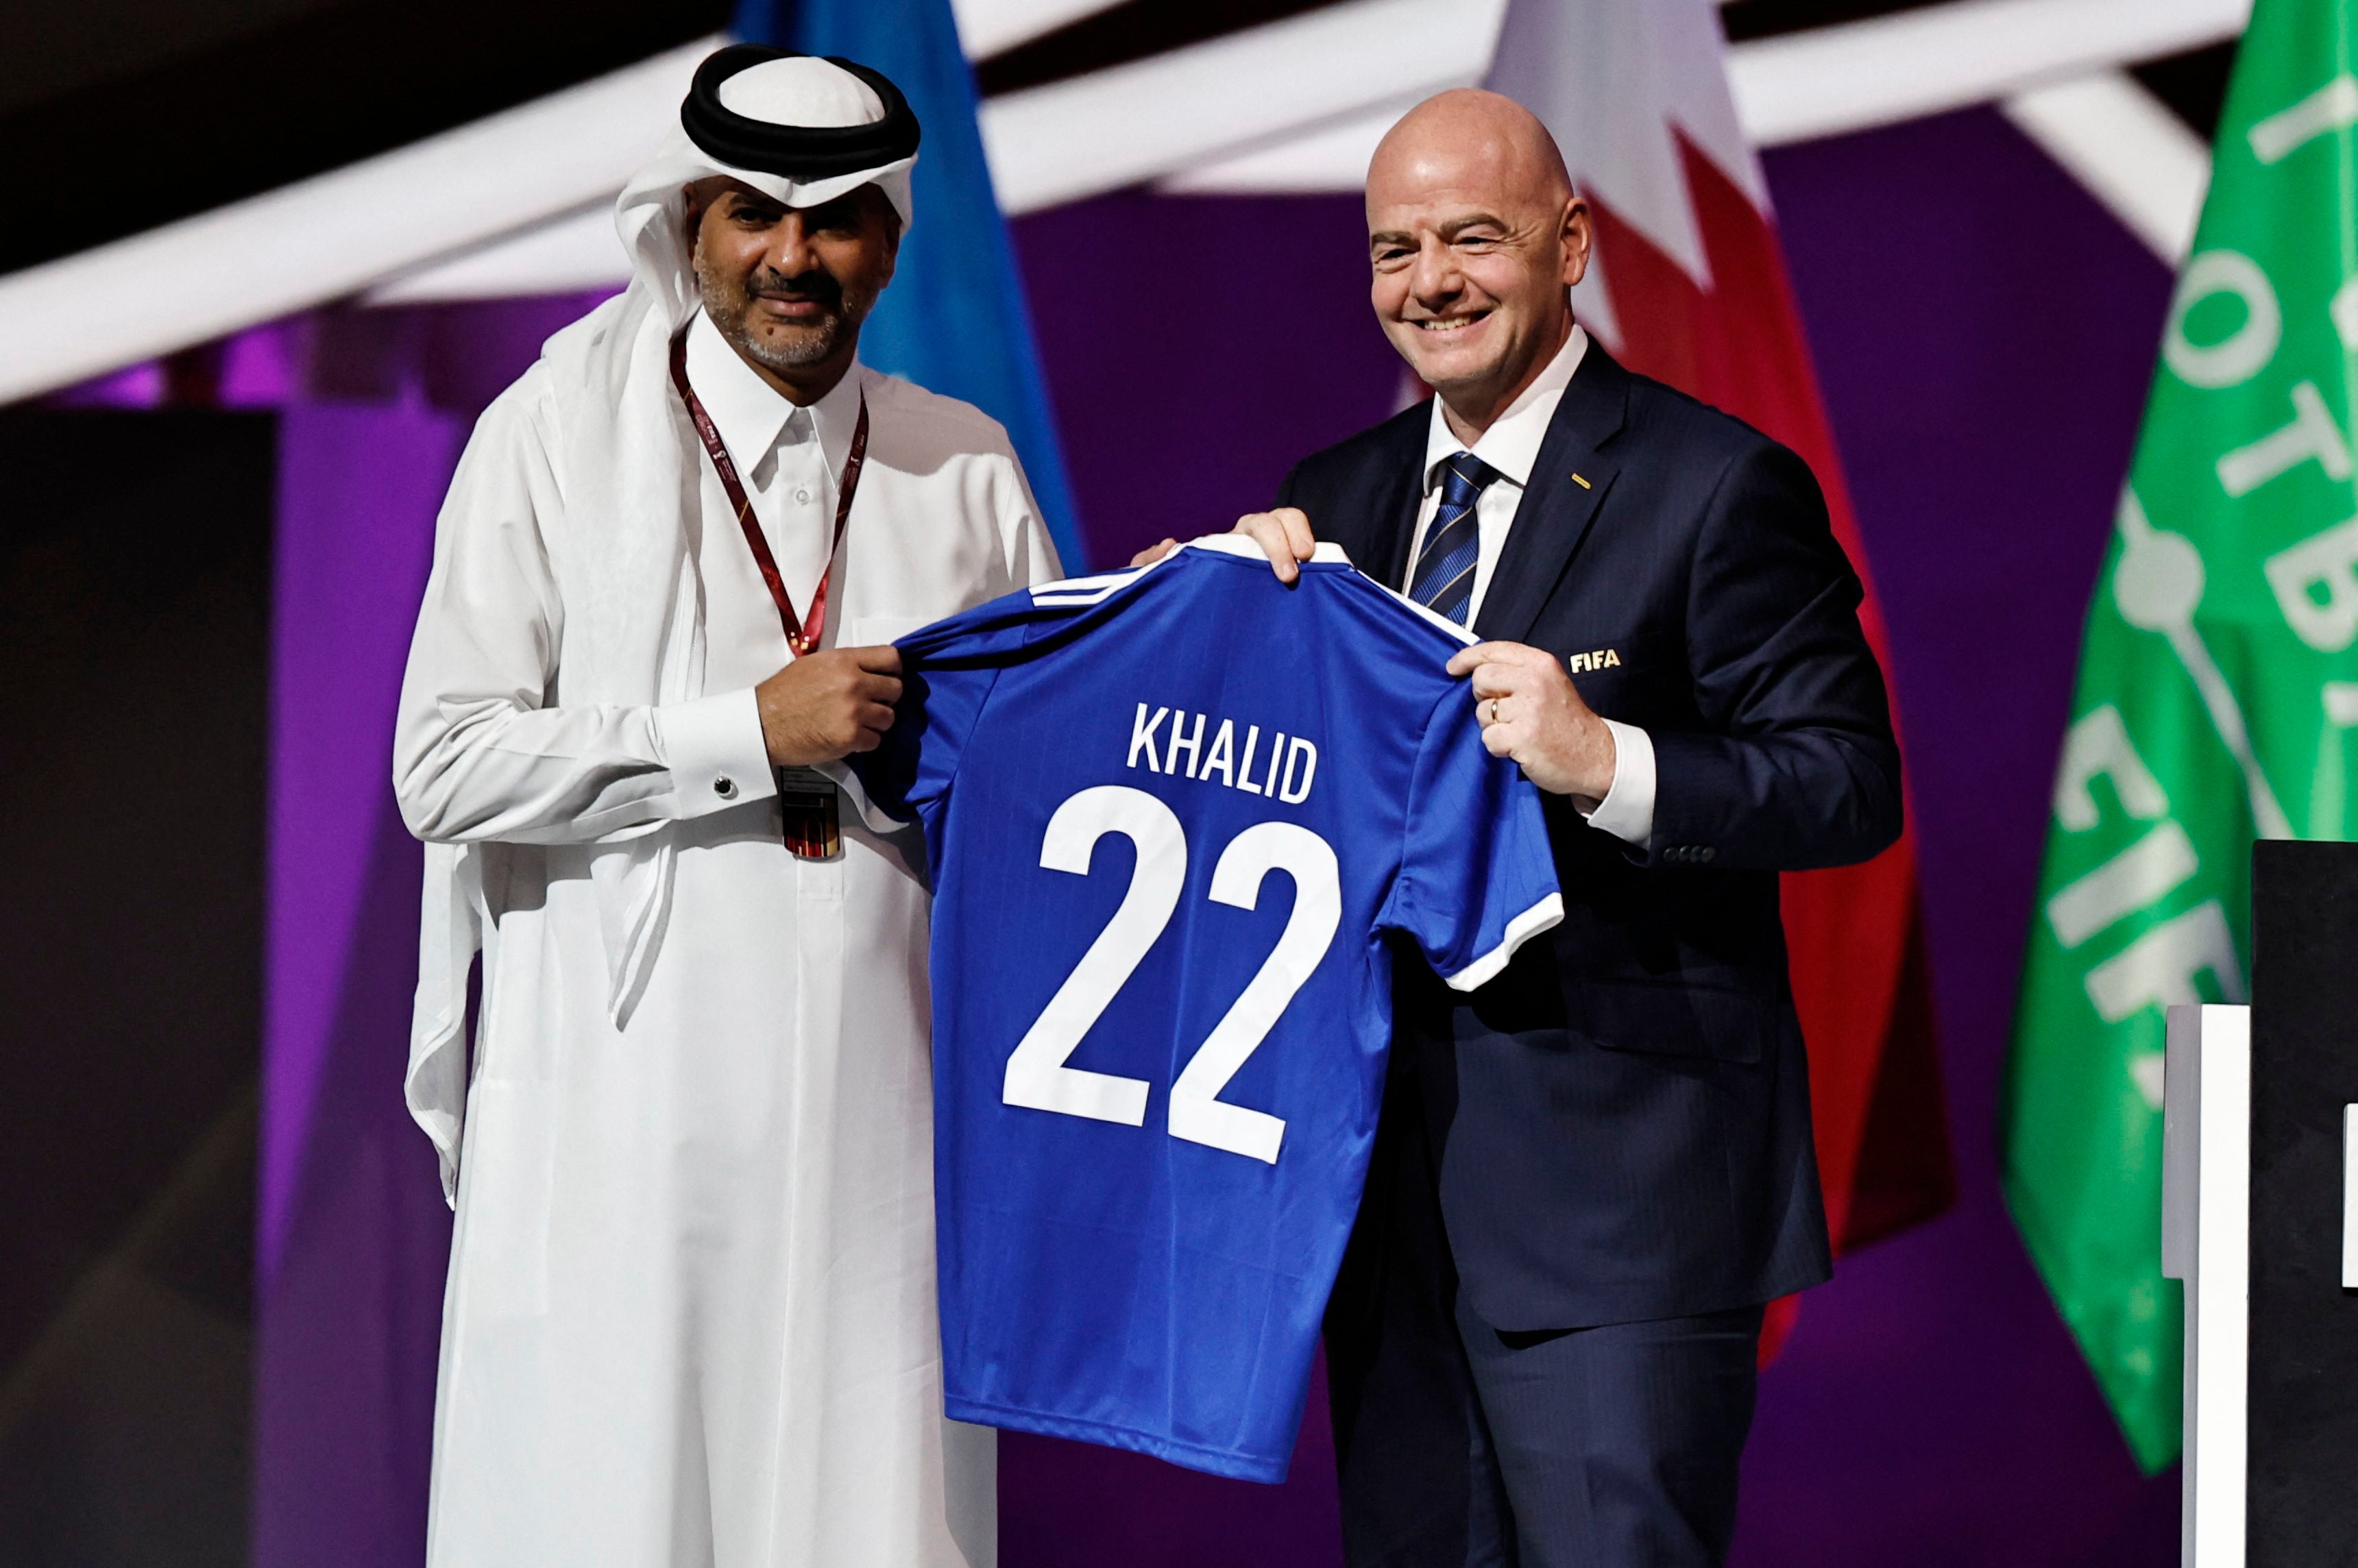 El presidente de la FIFA Gianni Infantino posa junto al primer ministro de Qatar